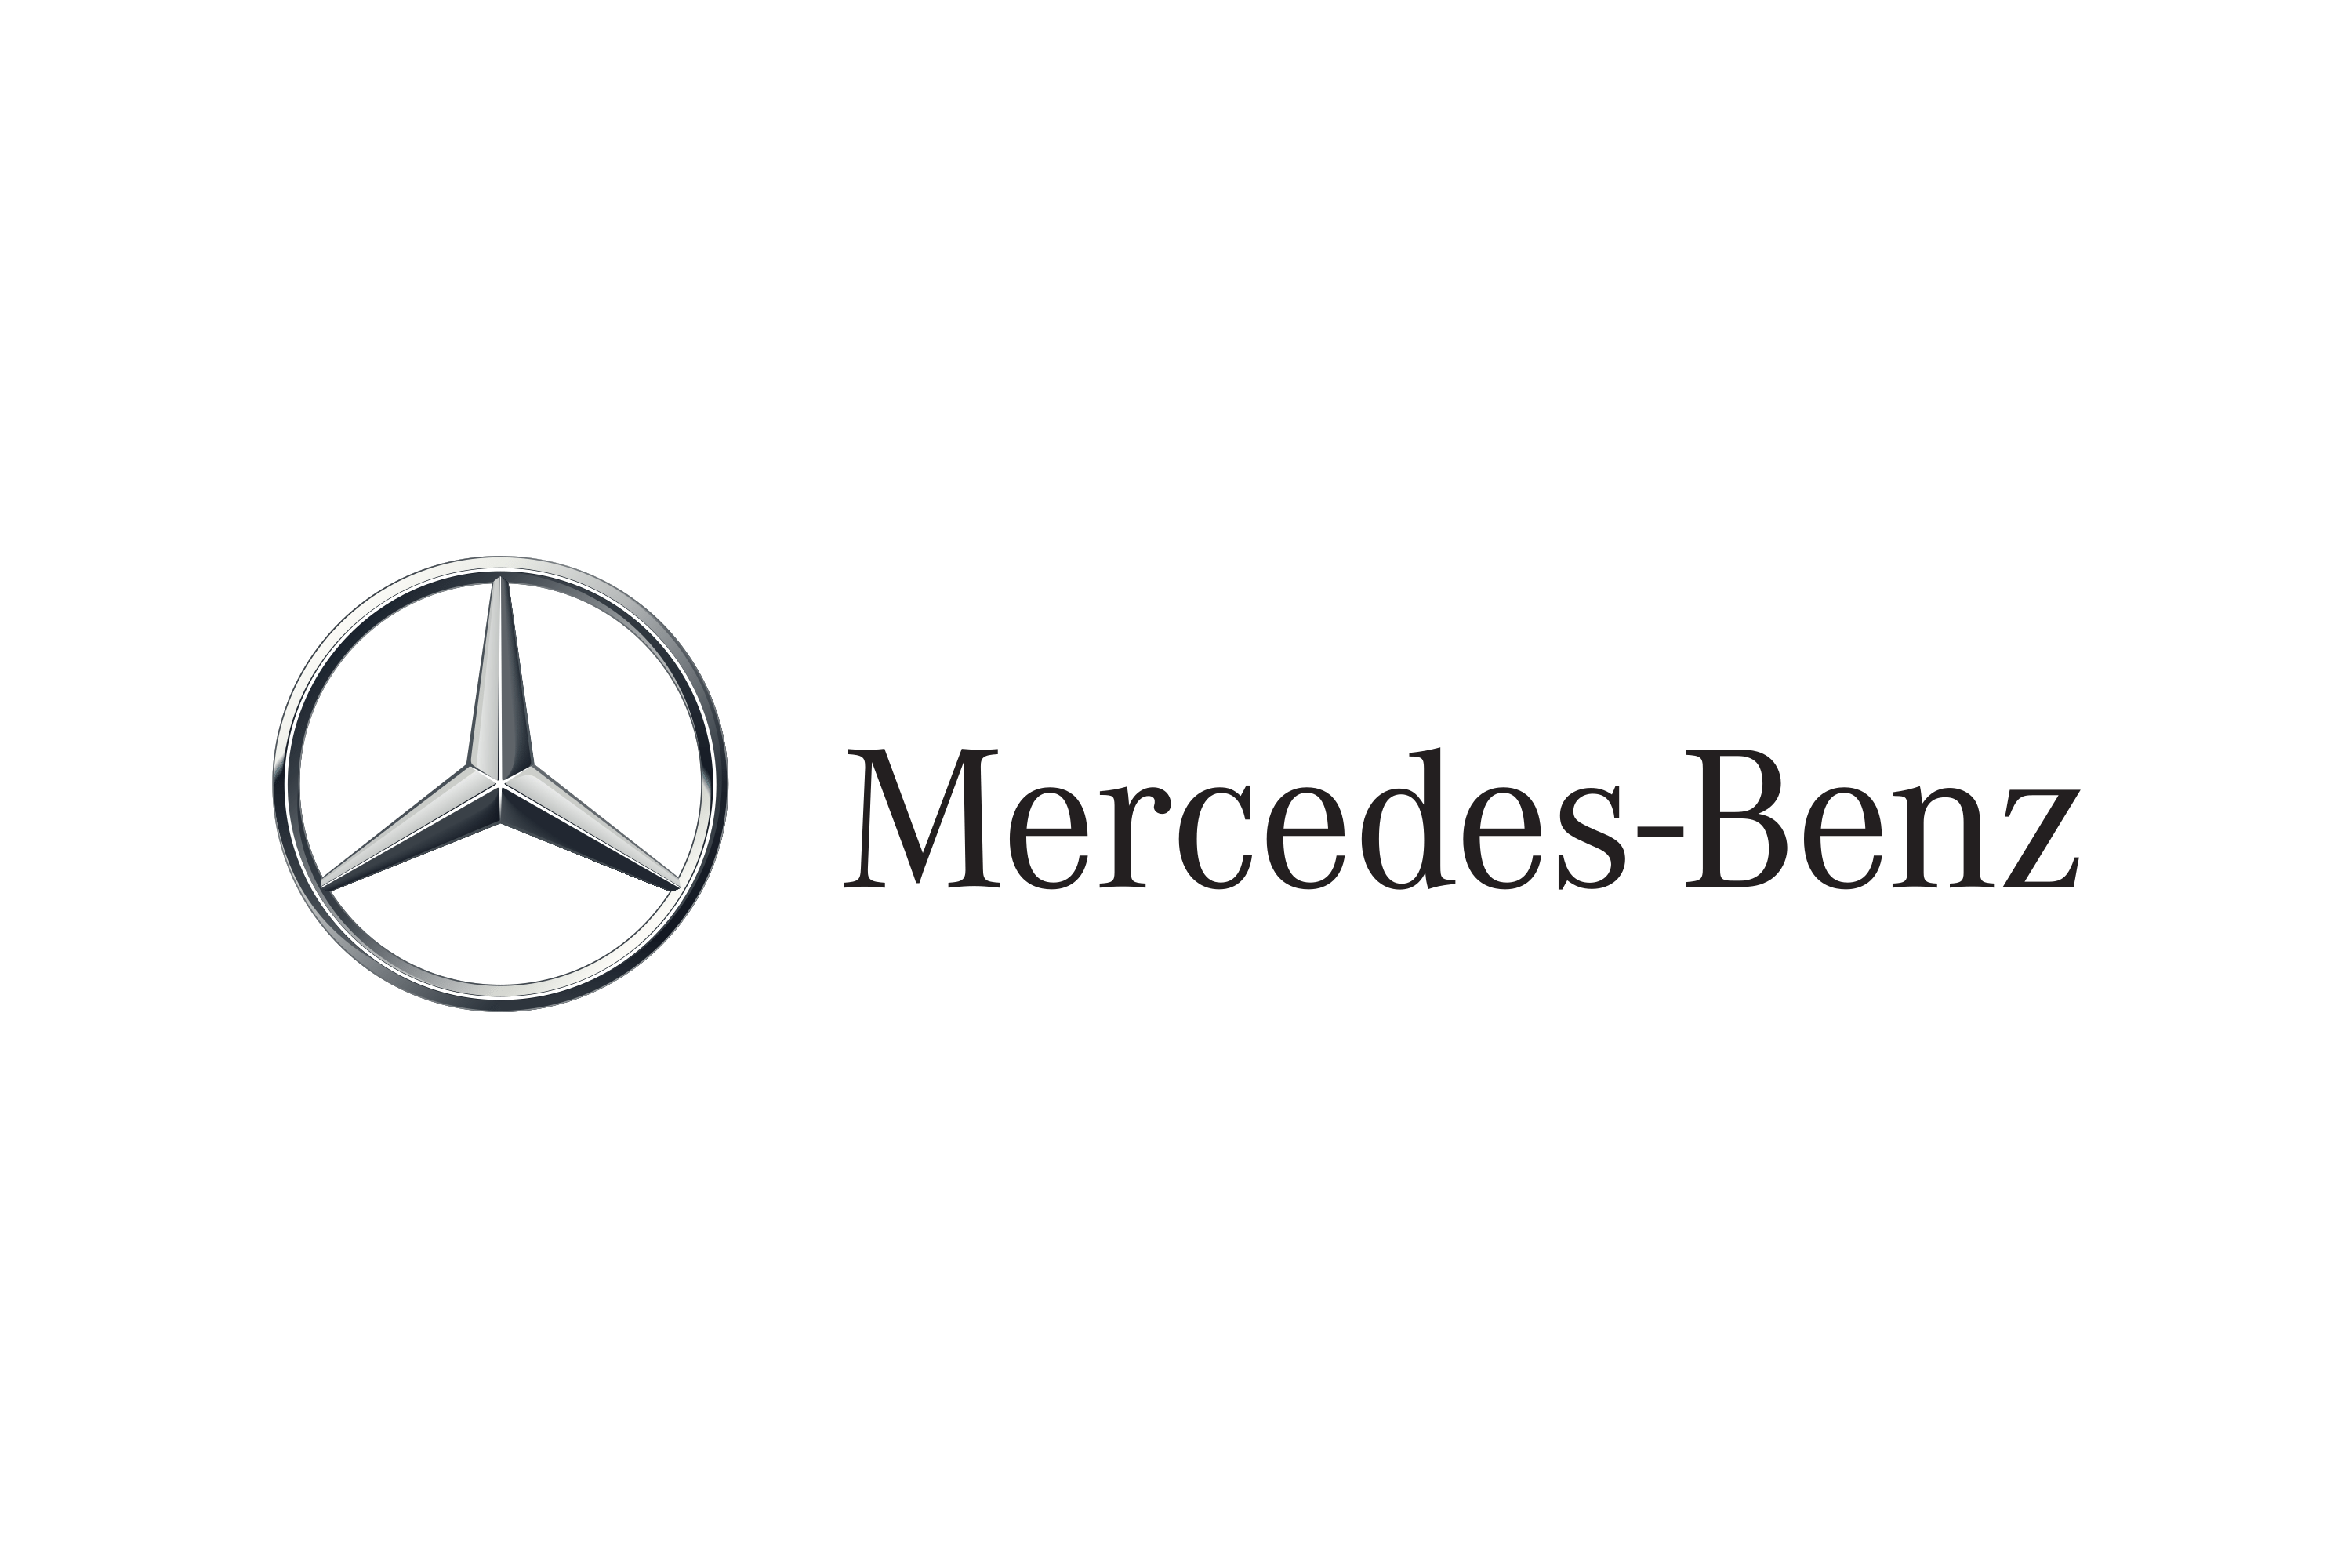 Download Mercedes Benz Logo In Svg Vector Or Png File Format Logo Wine